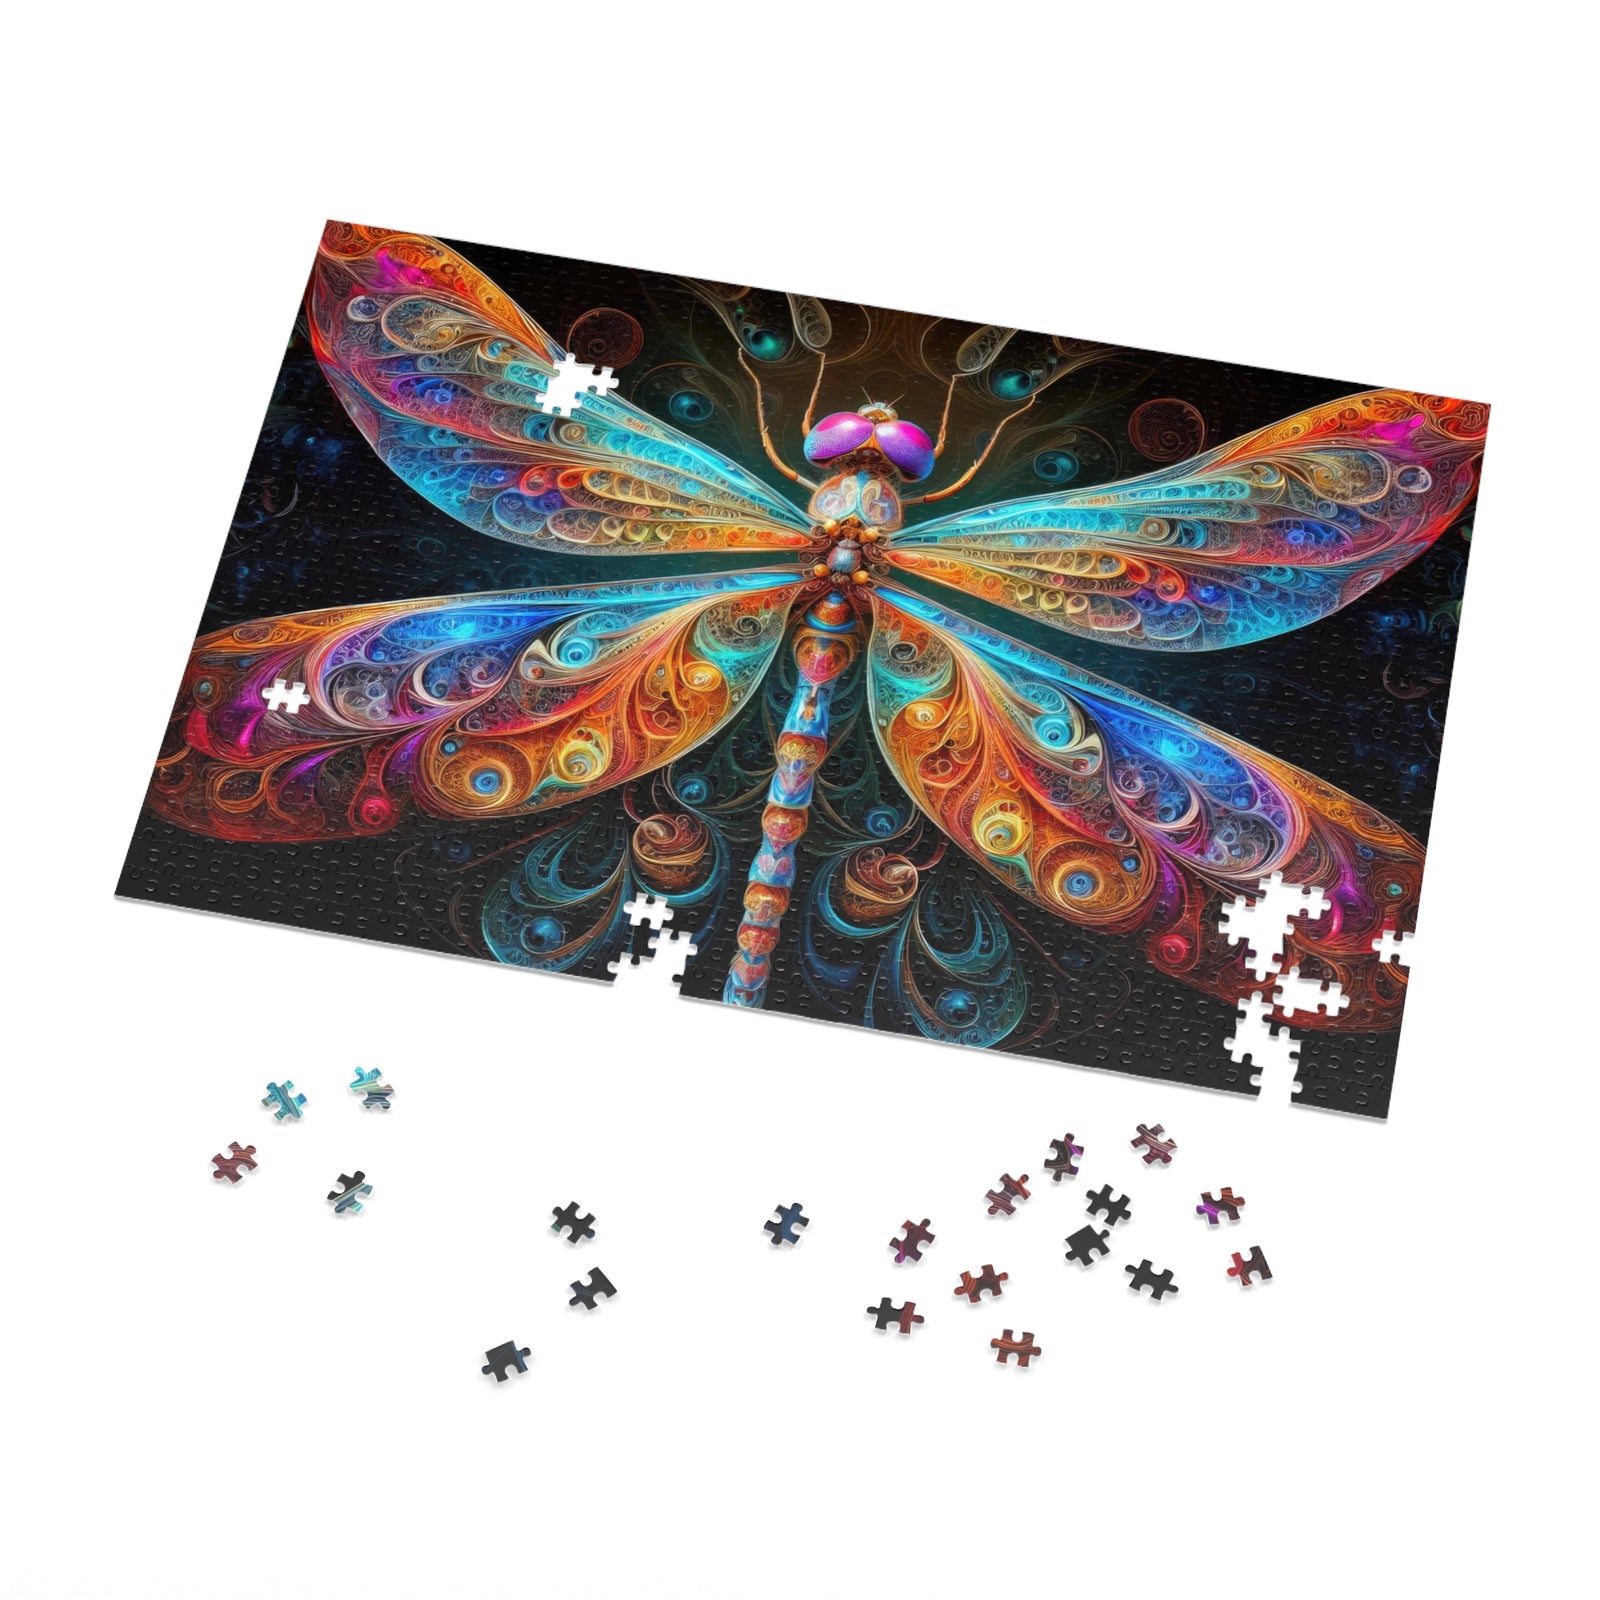 The Aetherwing Illumina Jigsaw Puzzle